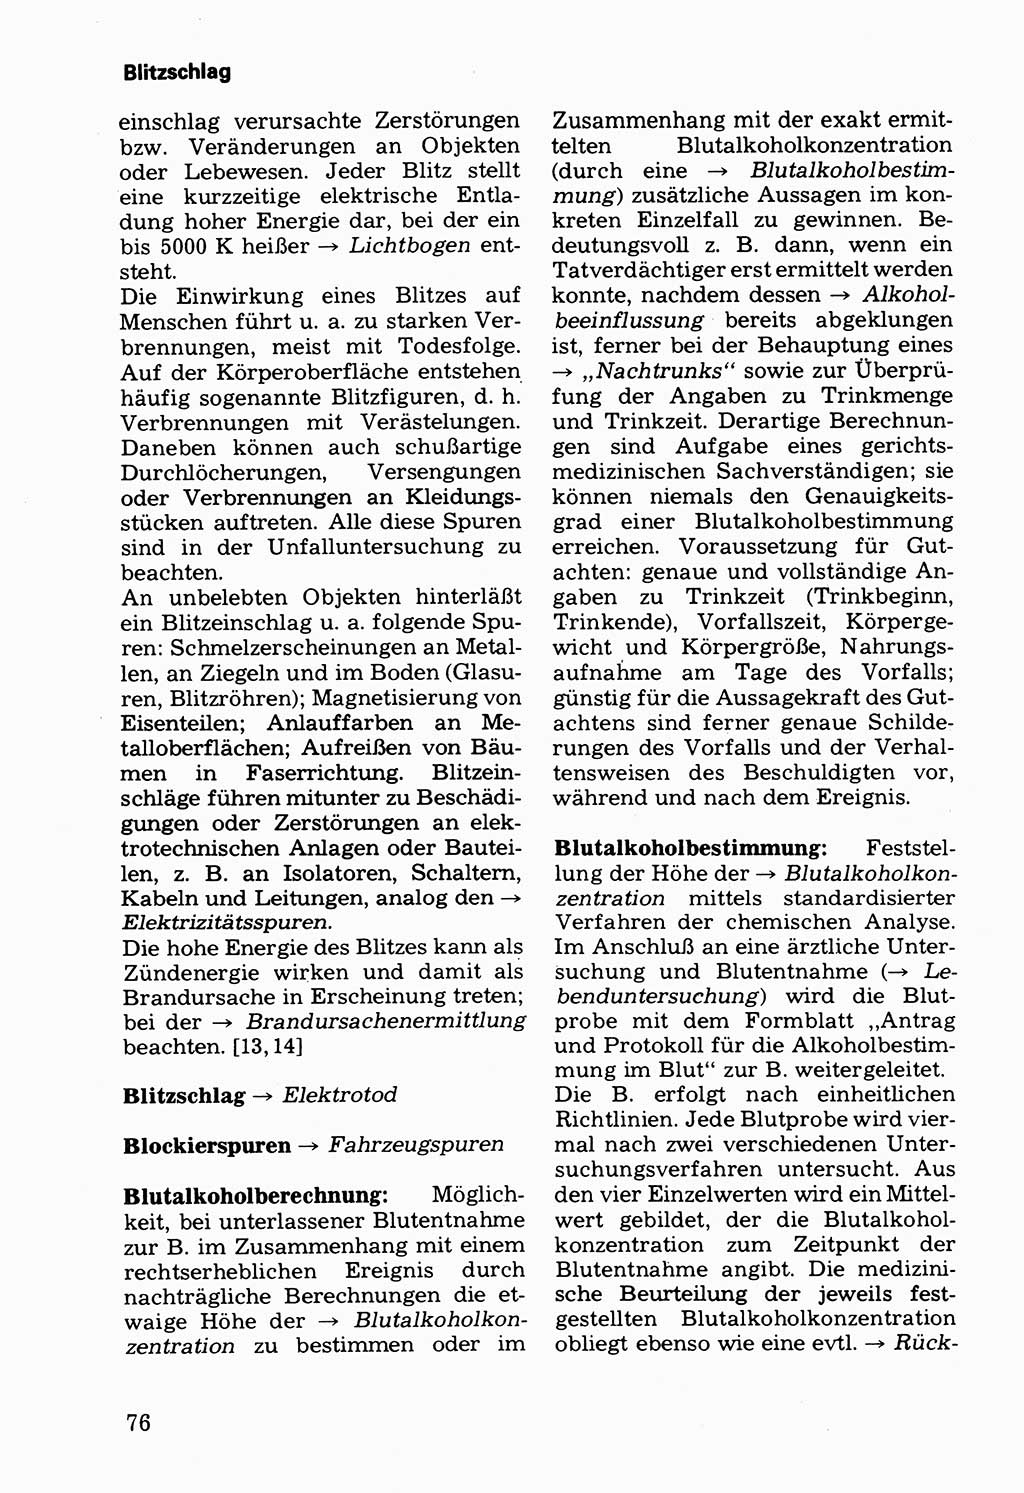 Wörterbuch der sozialistischen Kriminalistik [Deutsche Demokratische Republik (DDR)] 1981, Seite 76 (Wb. soz. Krim. DDR 1981, S. 76)